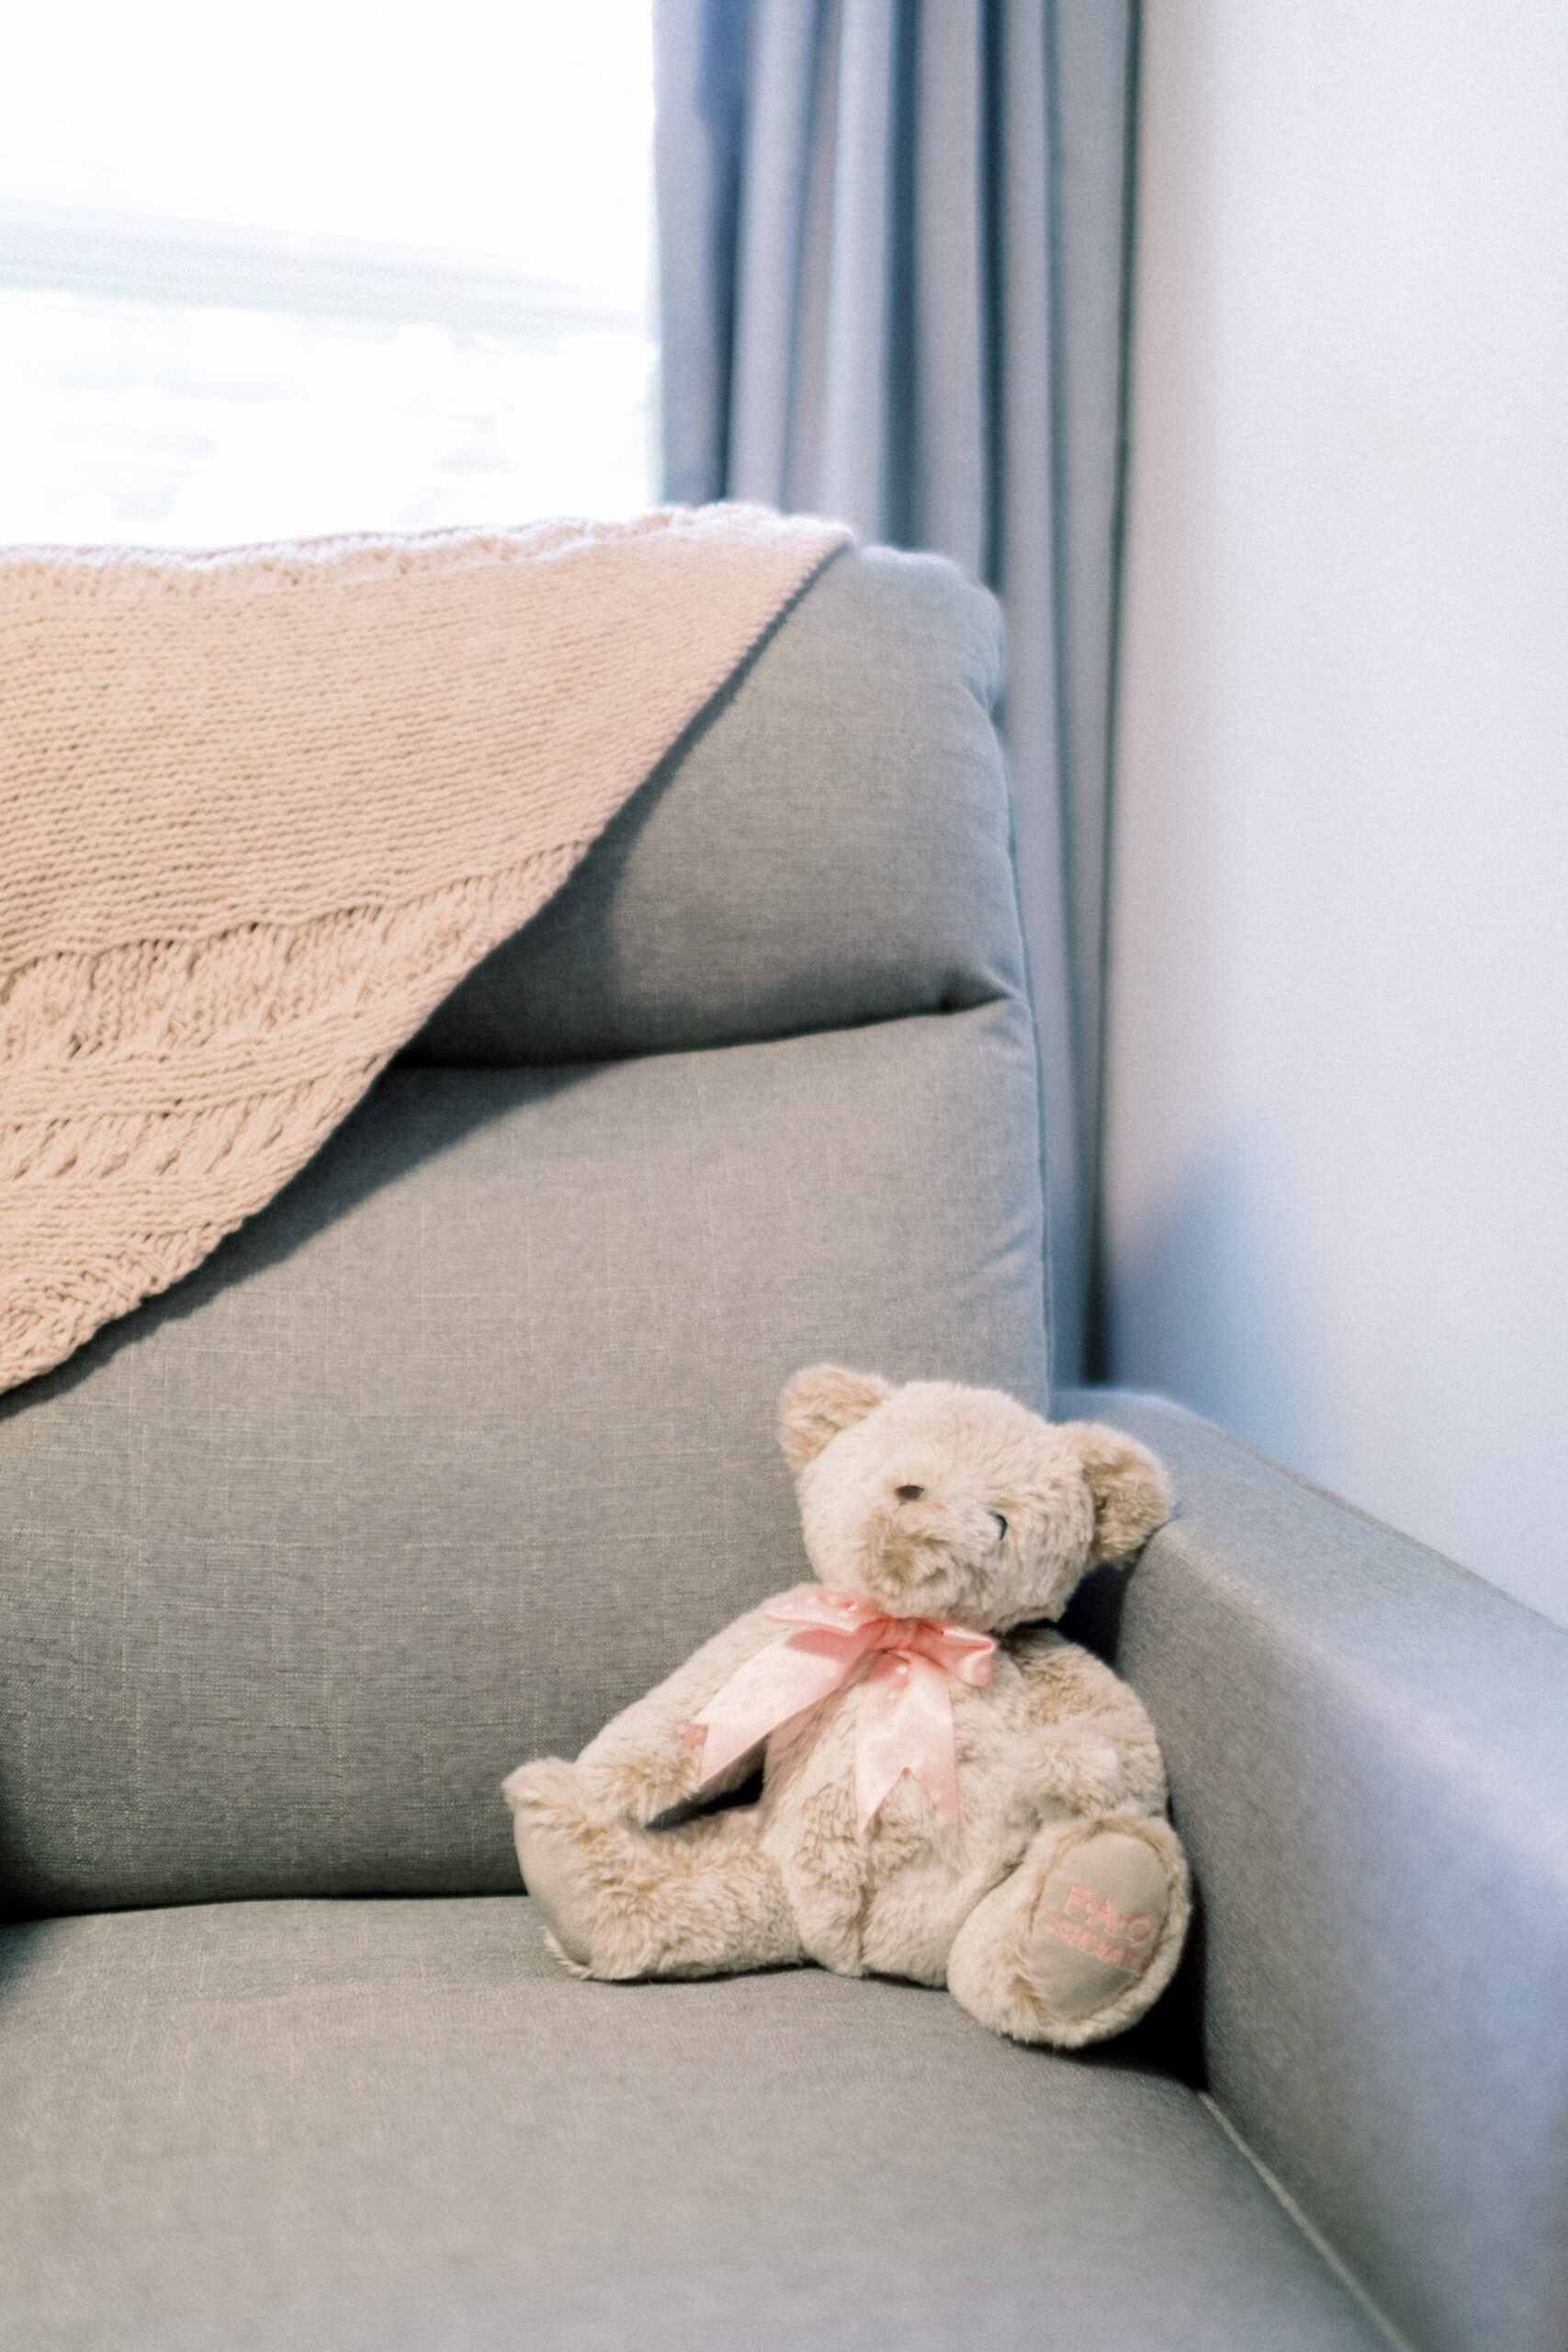 Maryland photographer captures teddy bear on chair